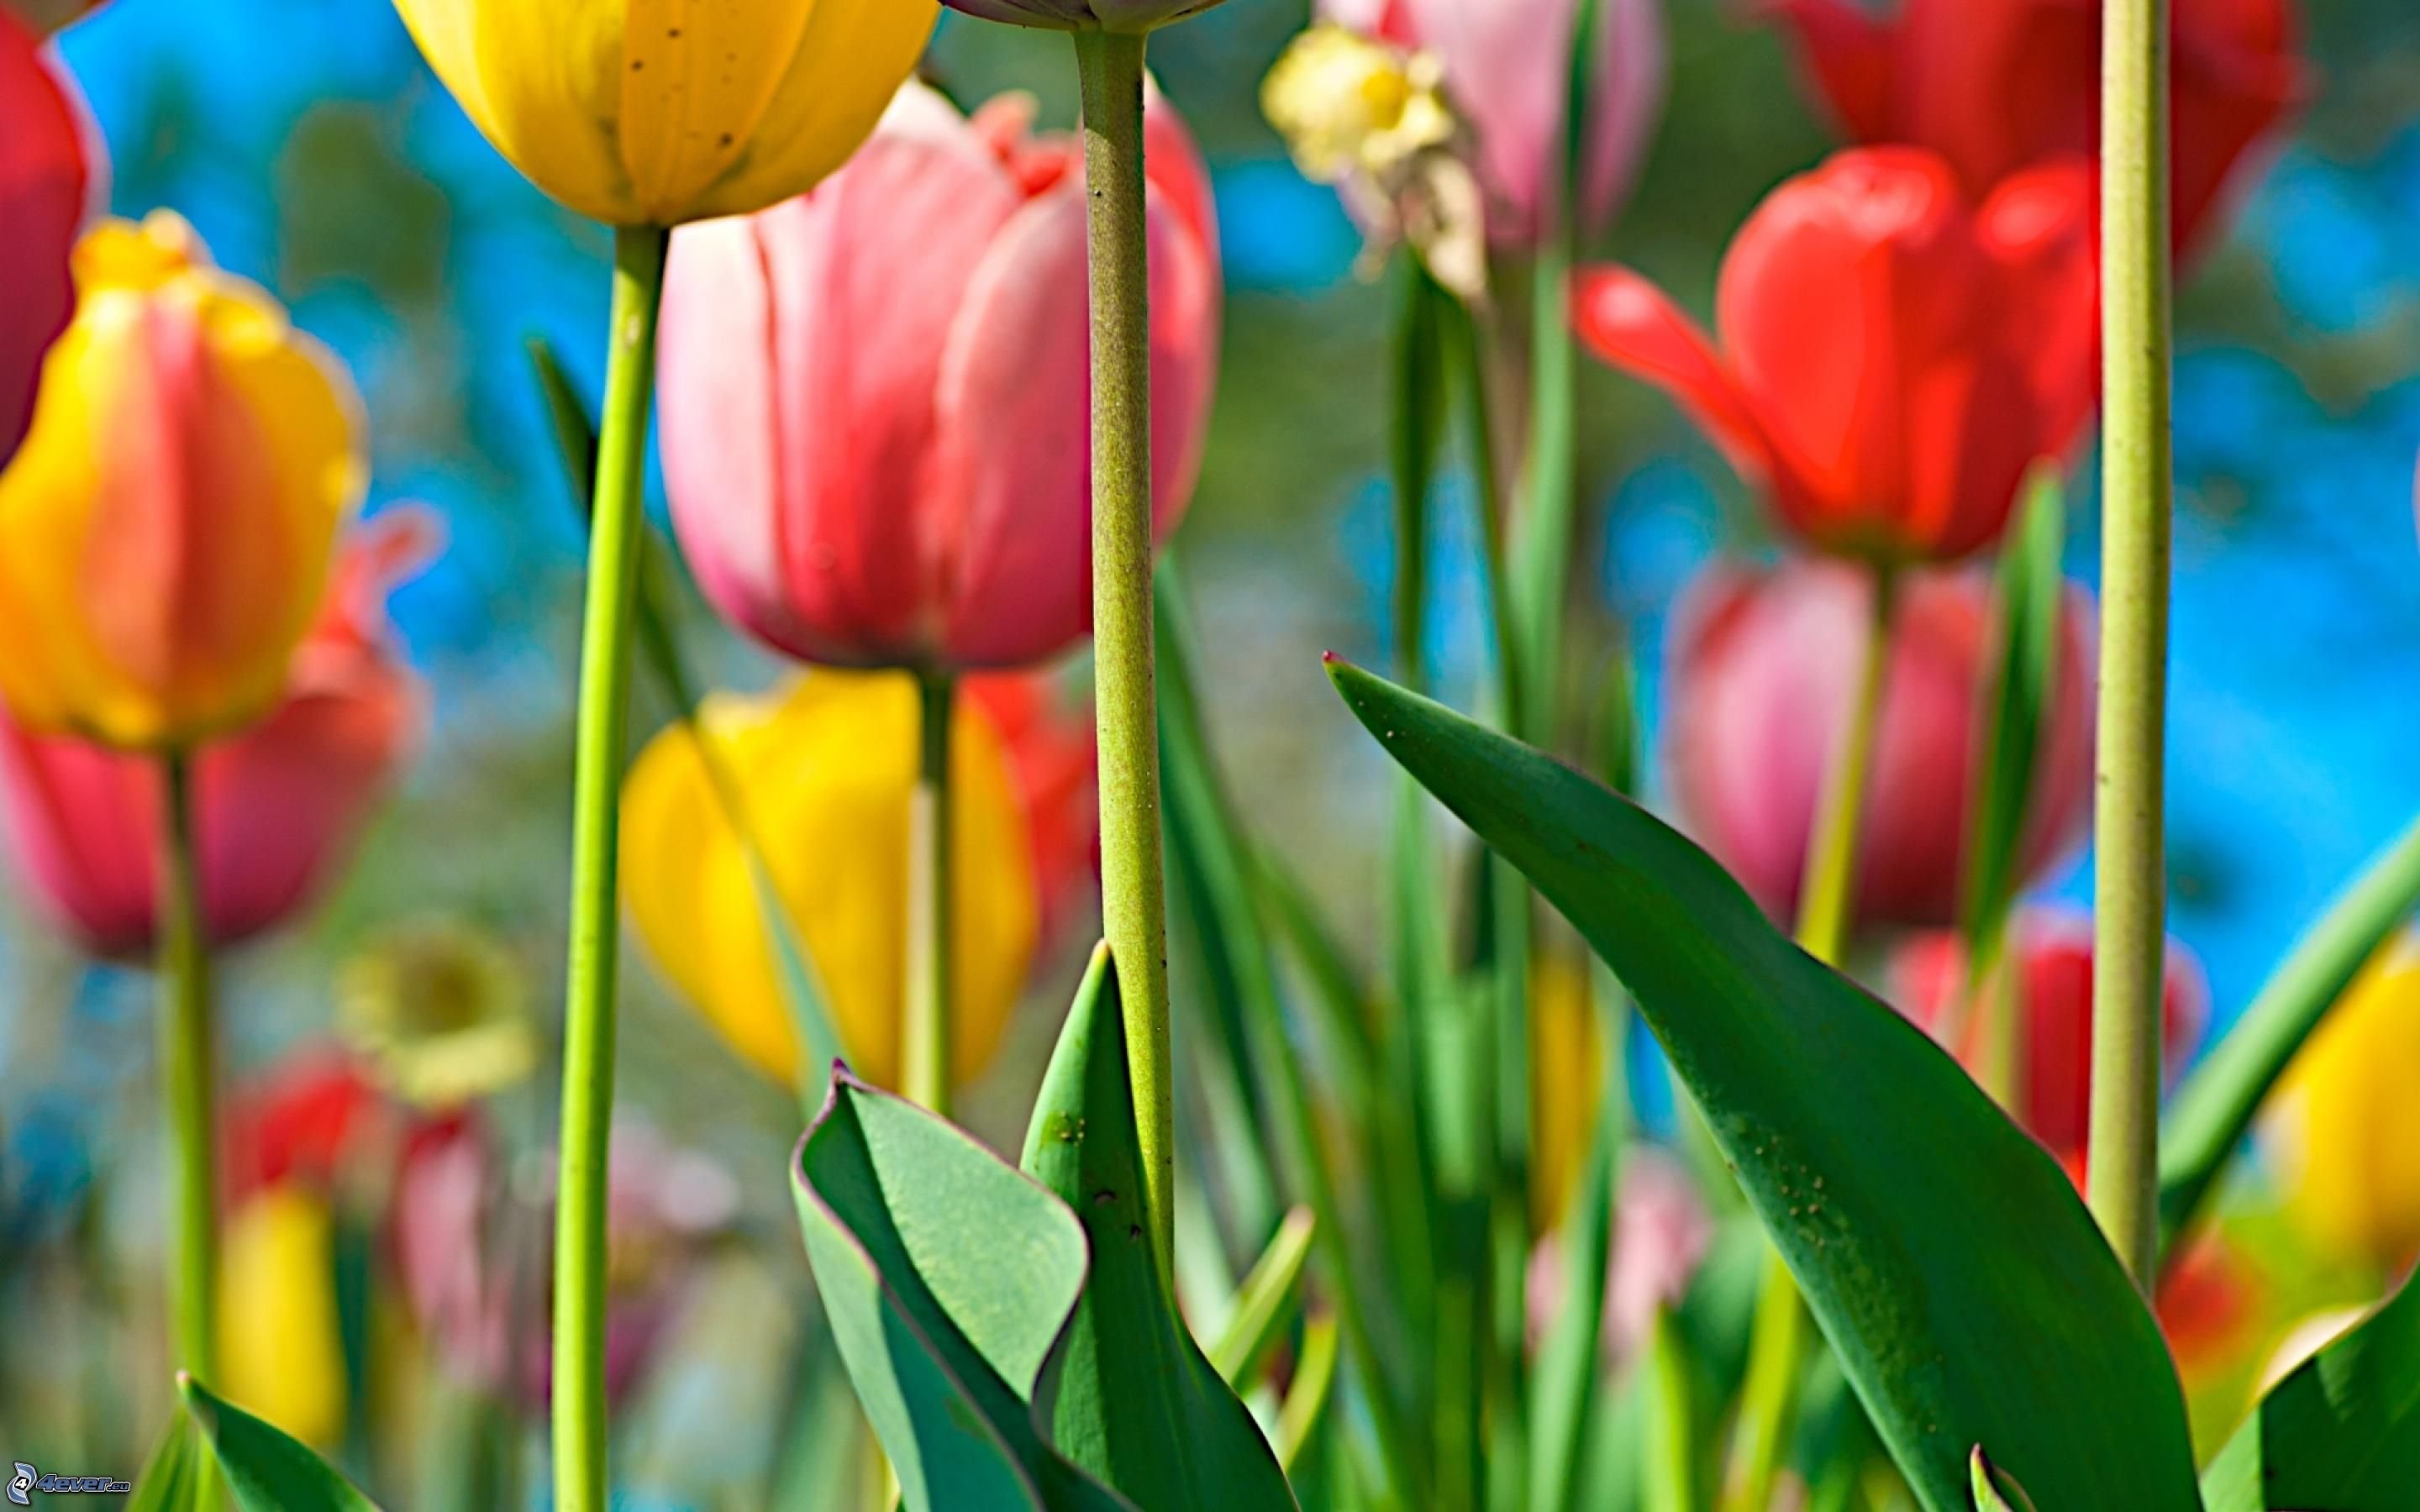 Обои на телефон красивые тюльпаны. Цветы тюльпаны. Тюльпаны разноцветные. Весенние тюльпаны. Тюльпан многоцветный.